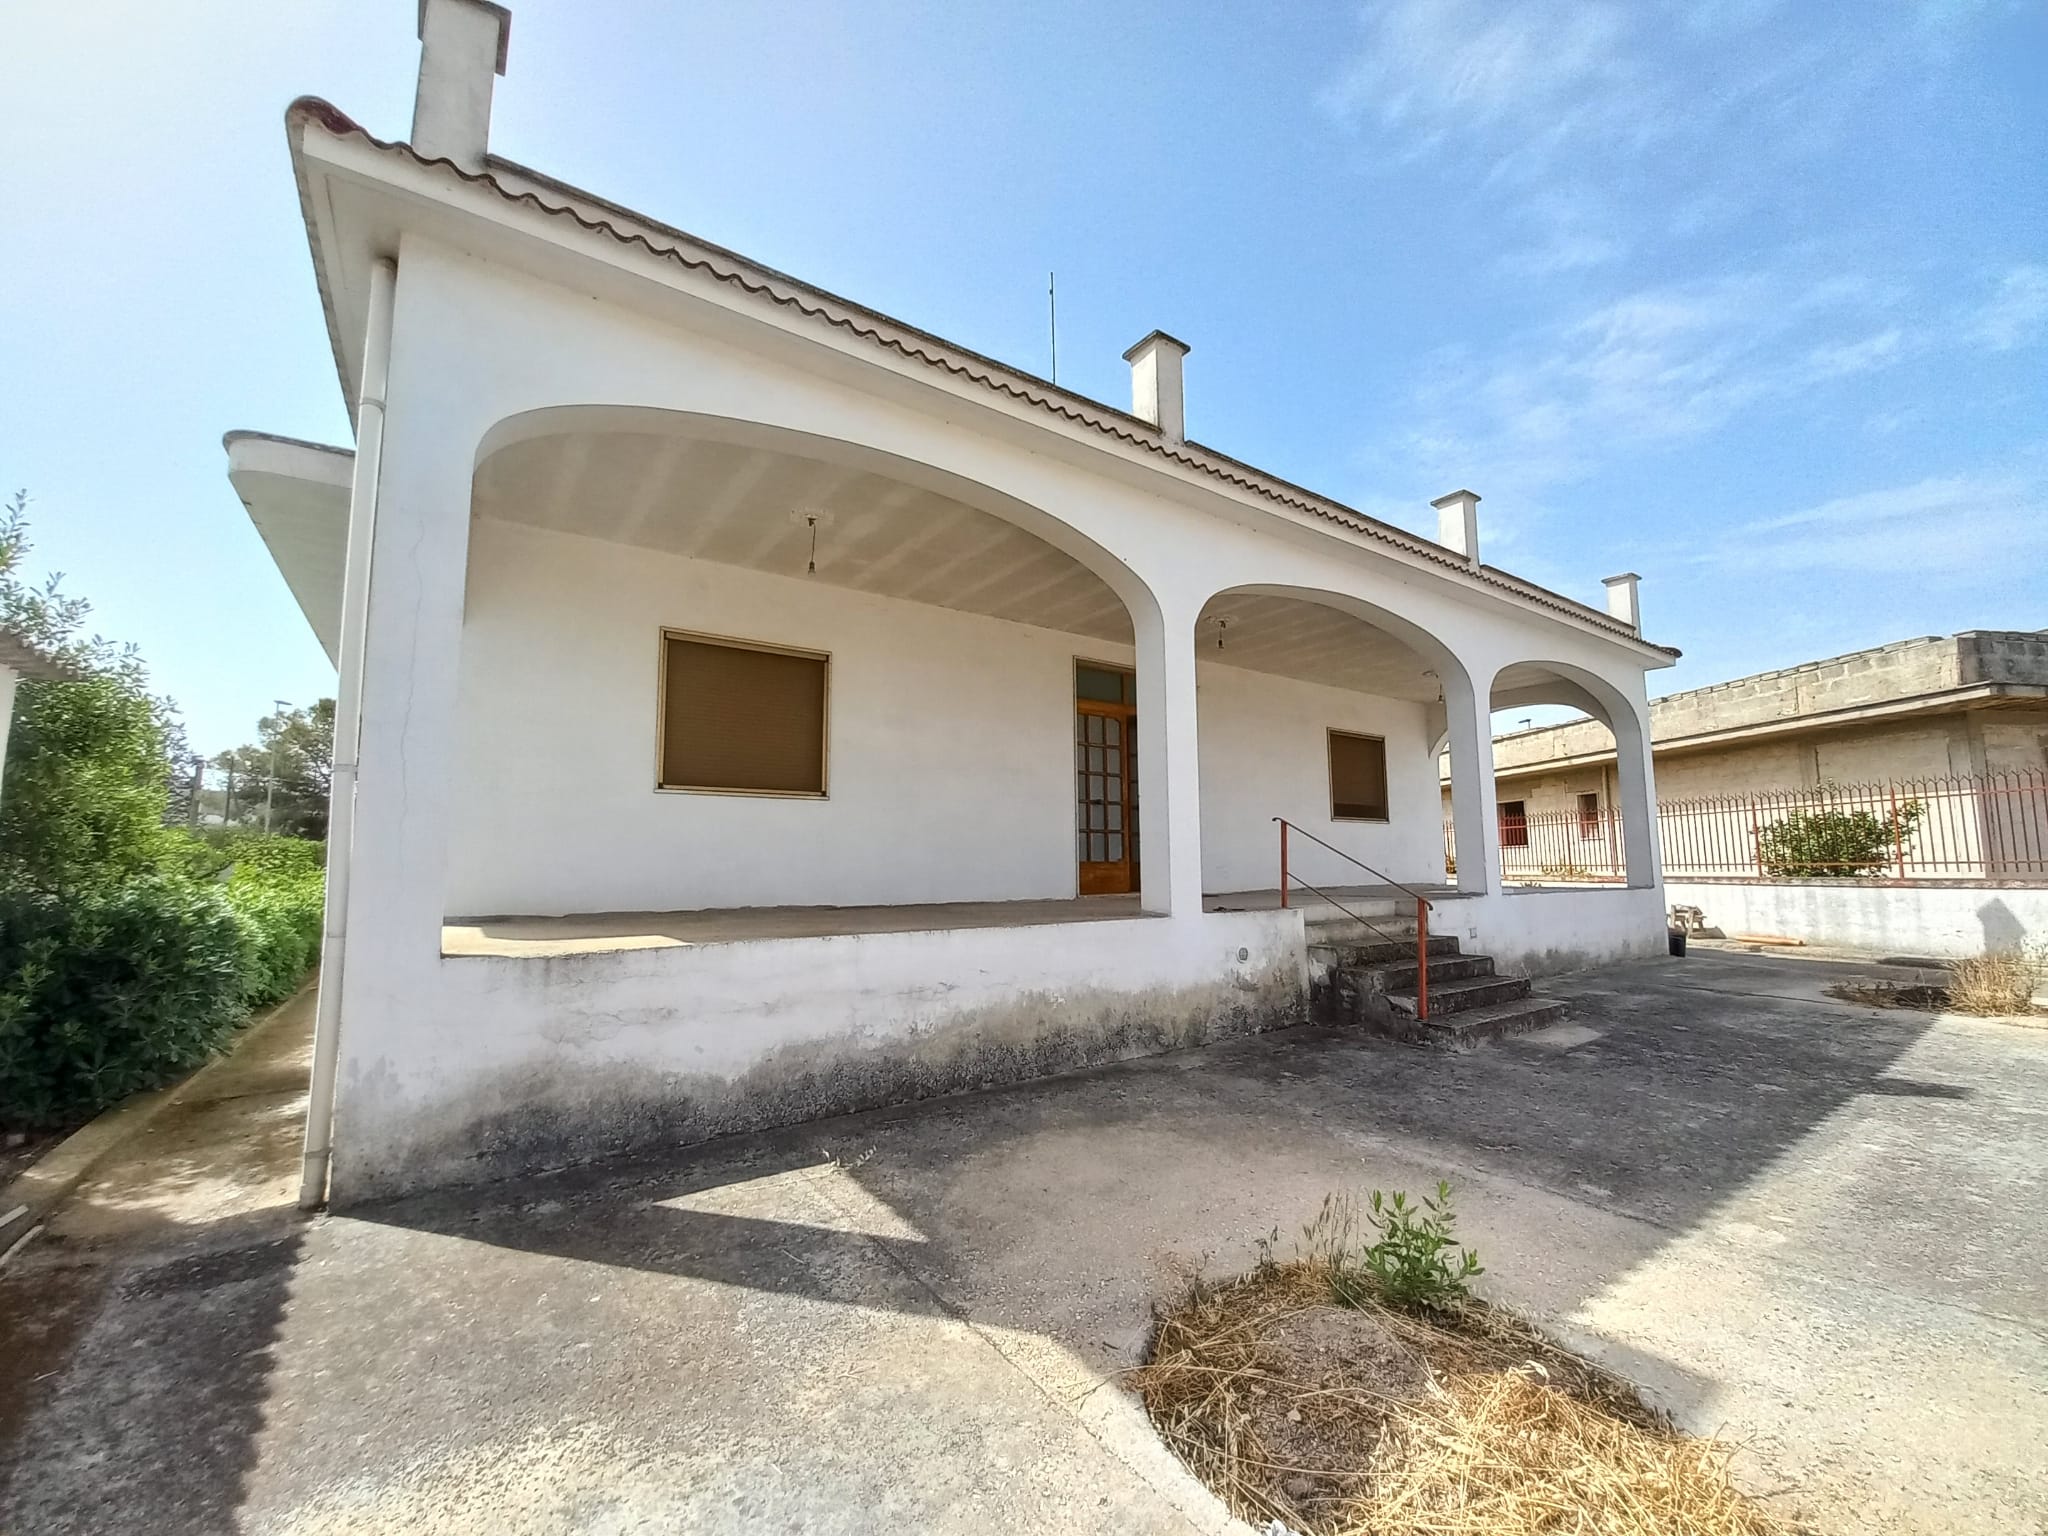 Talsano C/O Casa di Cura S.Chiara Villa Singola Un Livello 5Vani Giardino 1300mq.